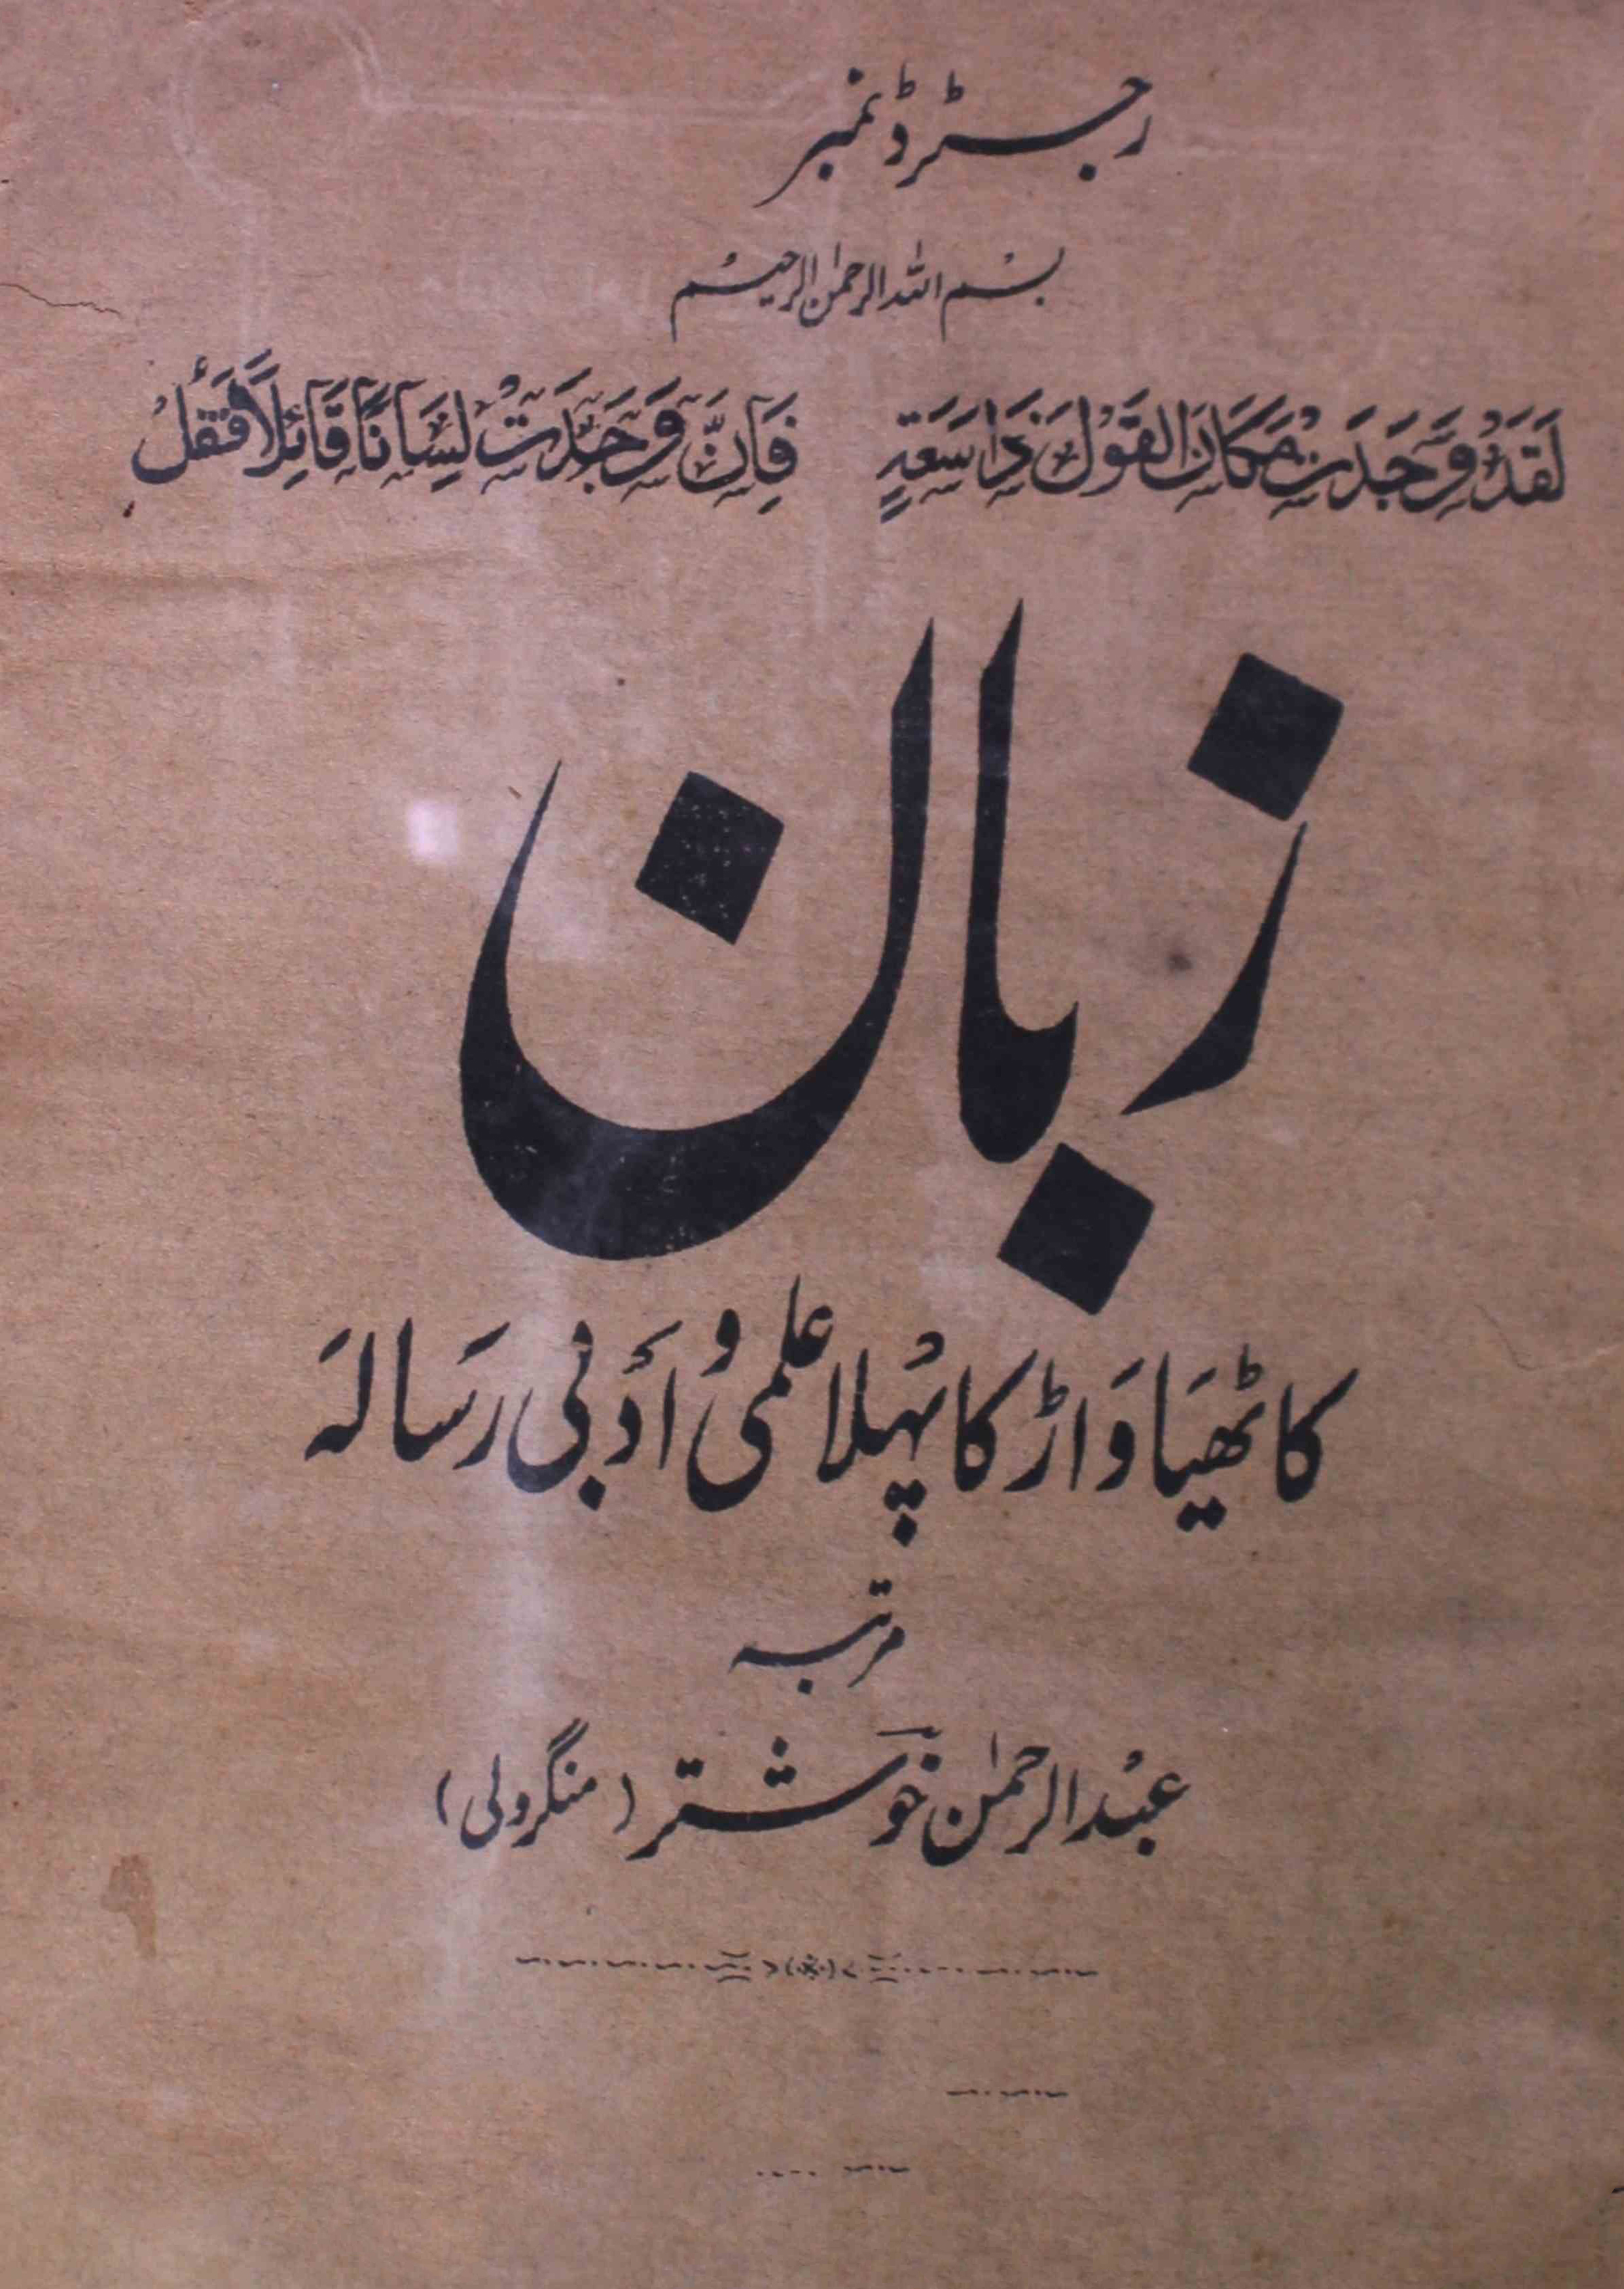 zaban-shumara-number-001-abdur-rahman-khushtar-mangroli-magazines